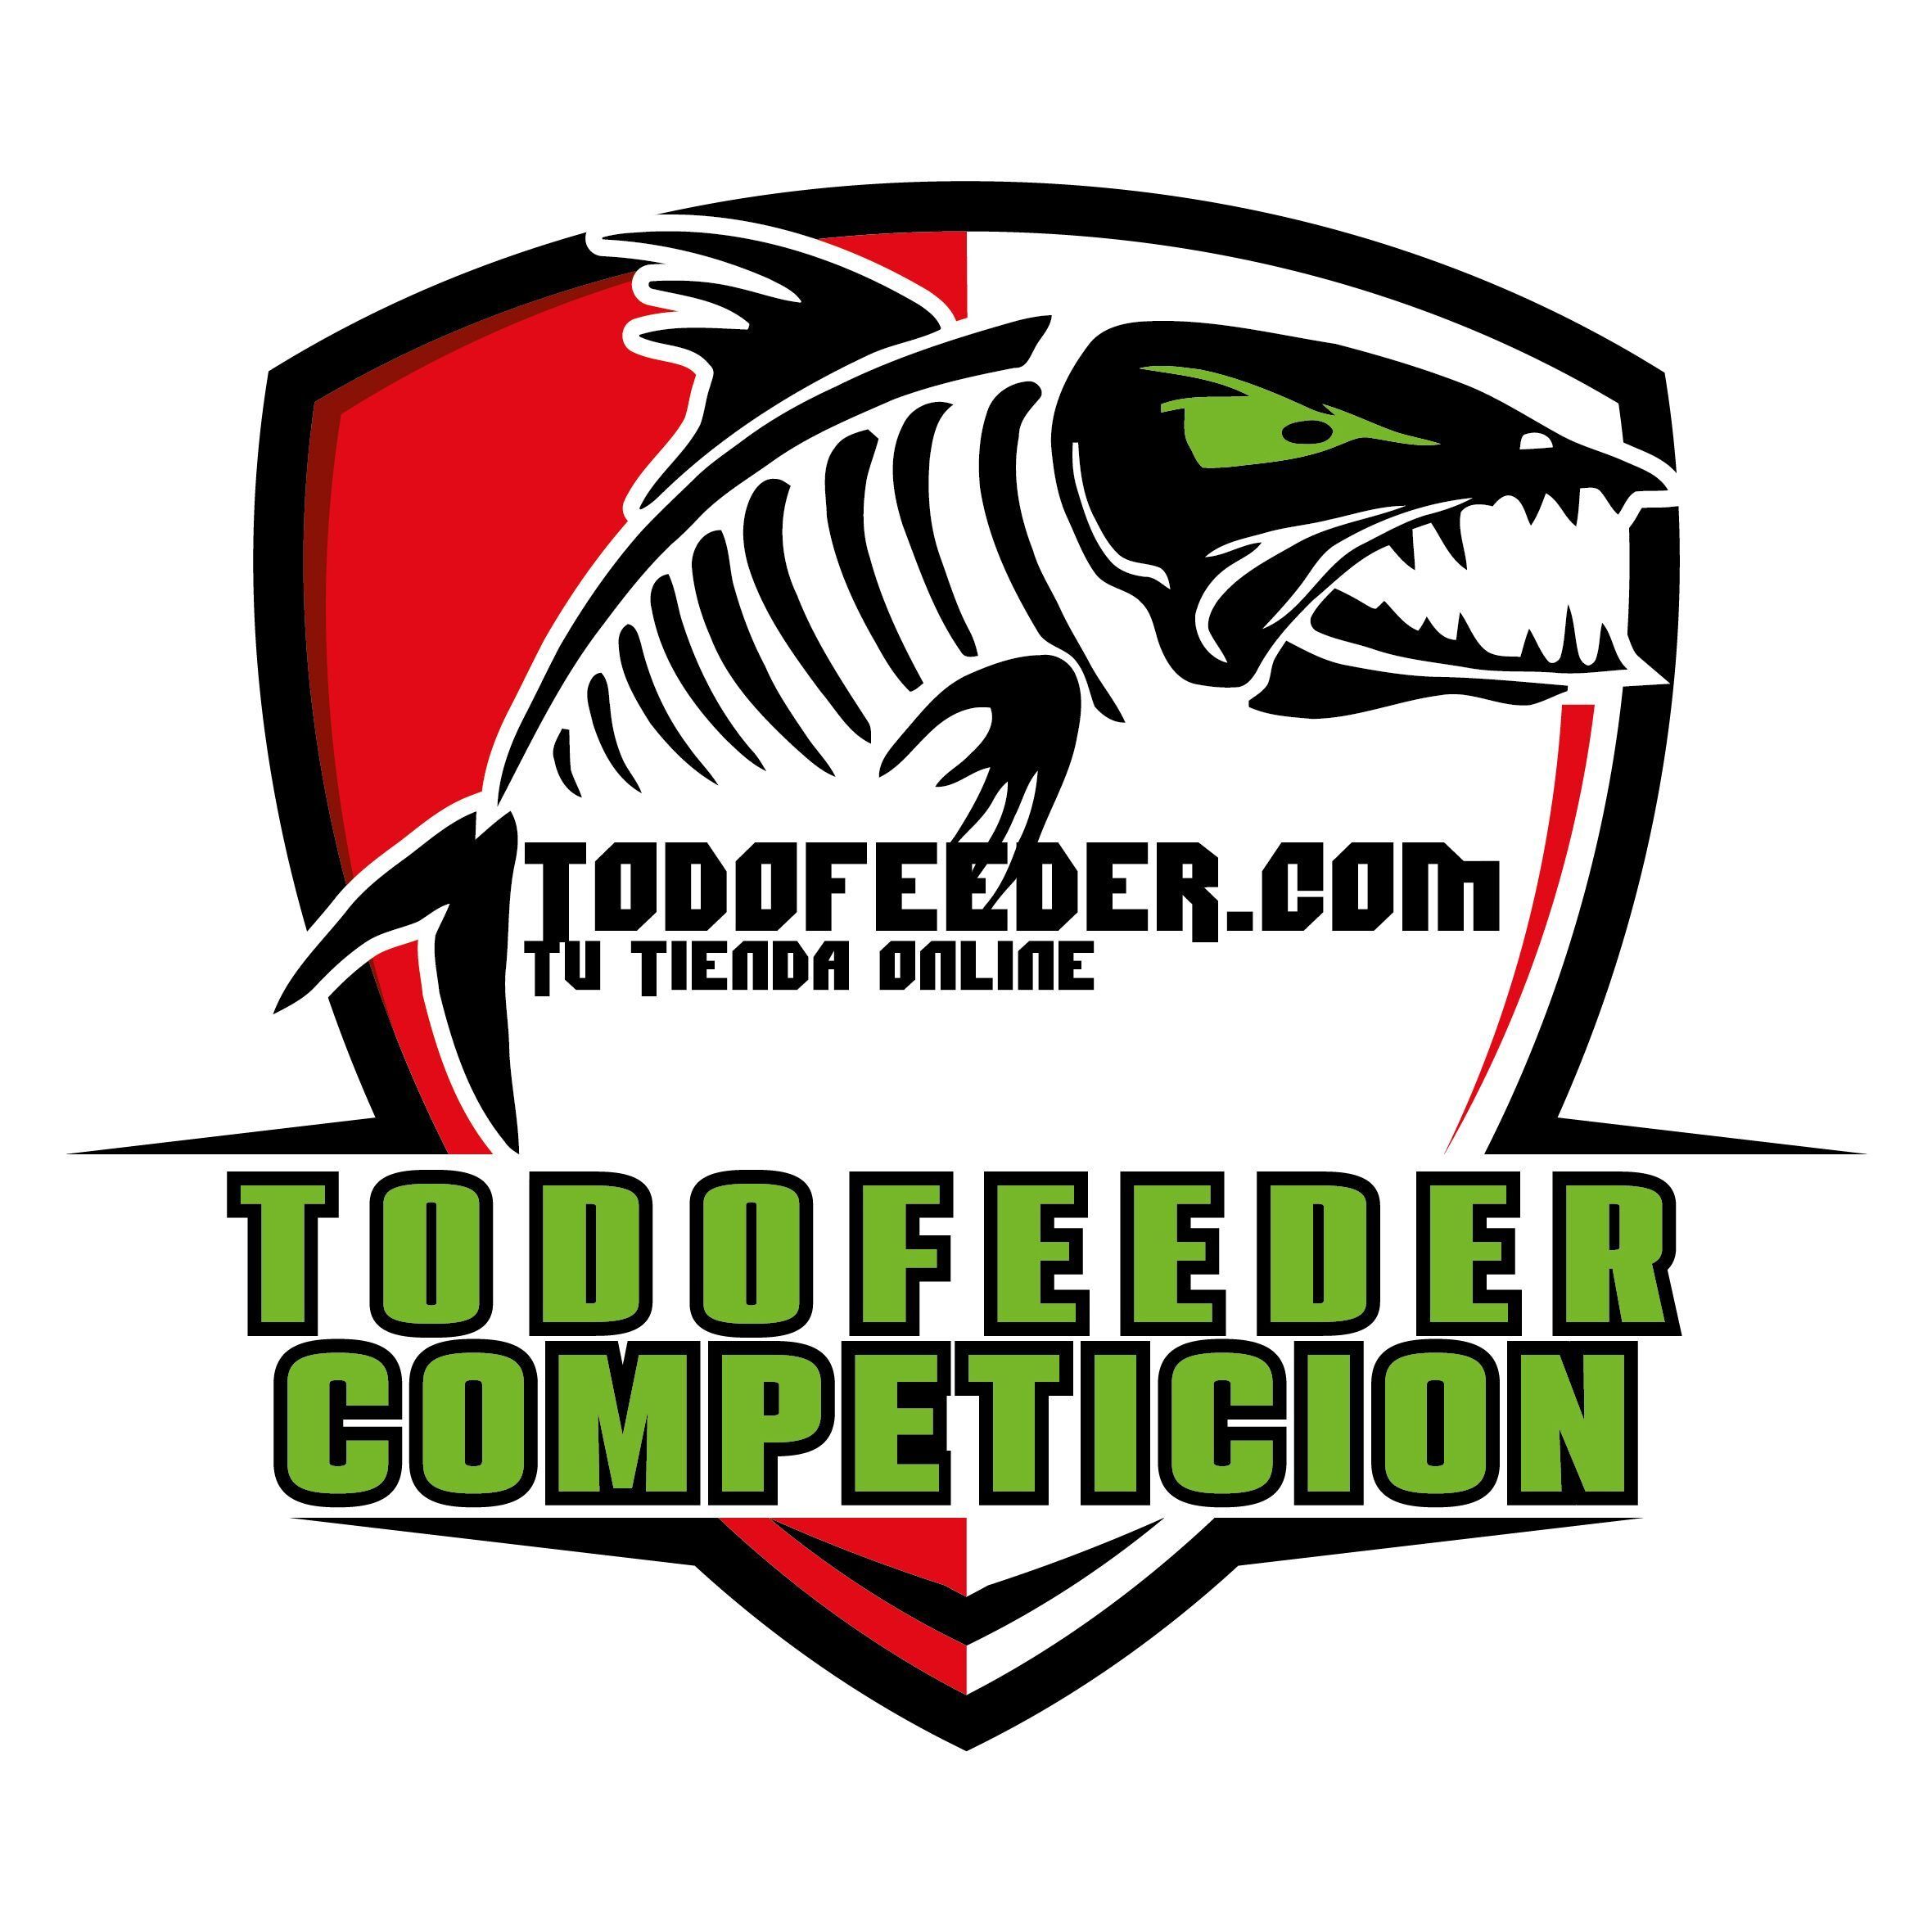 TODOFEEDER.COM